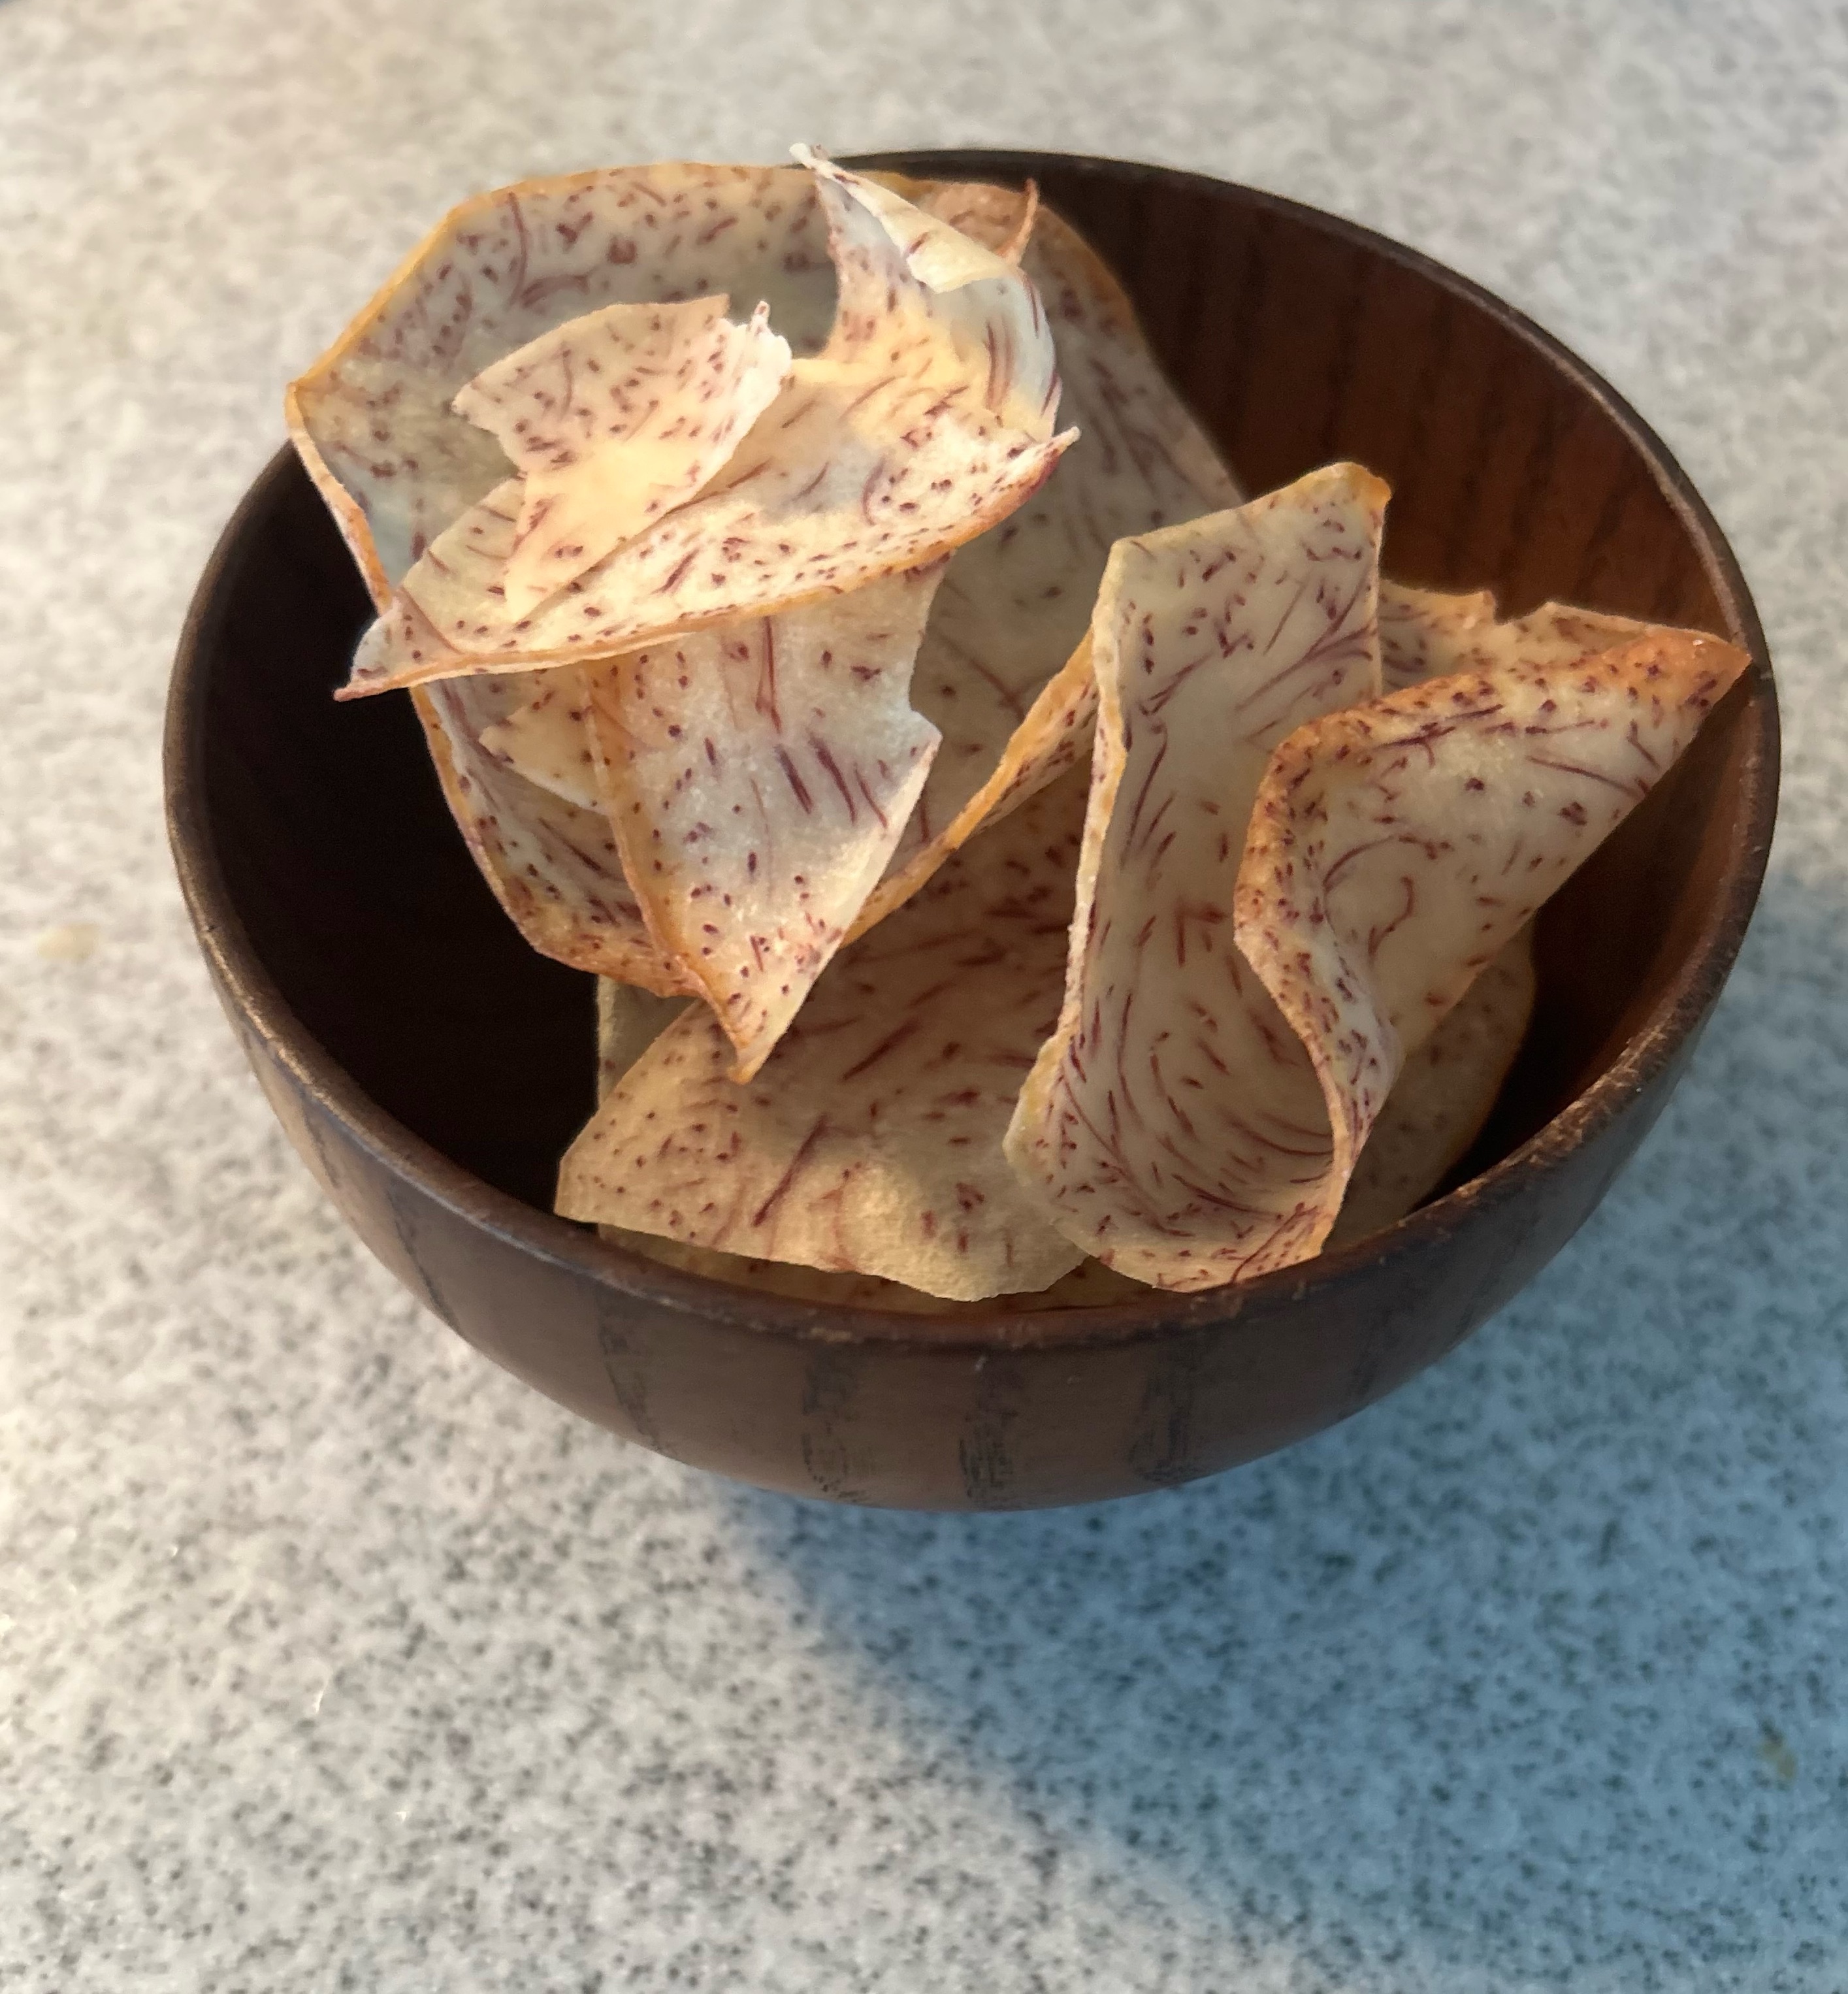 Plato con Taro chips